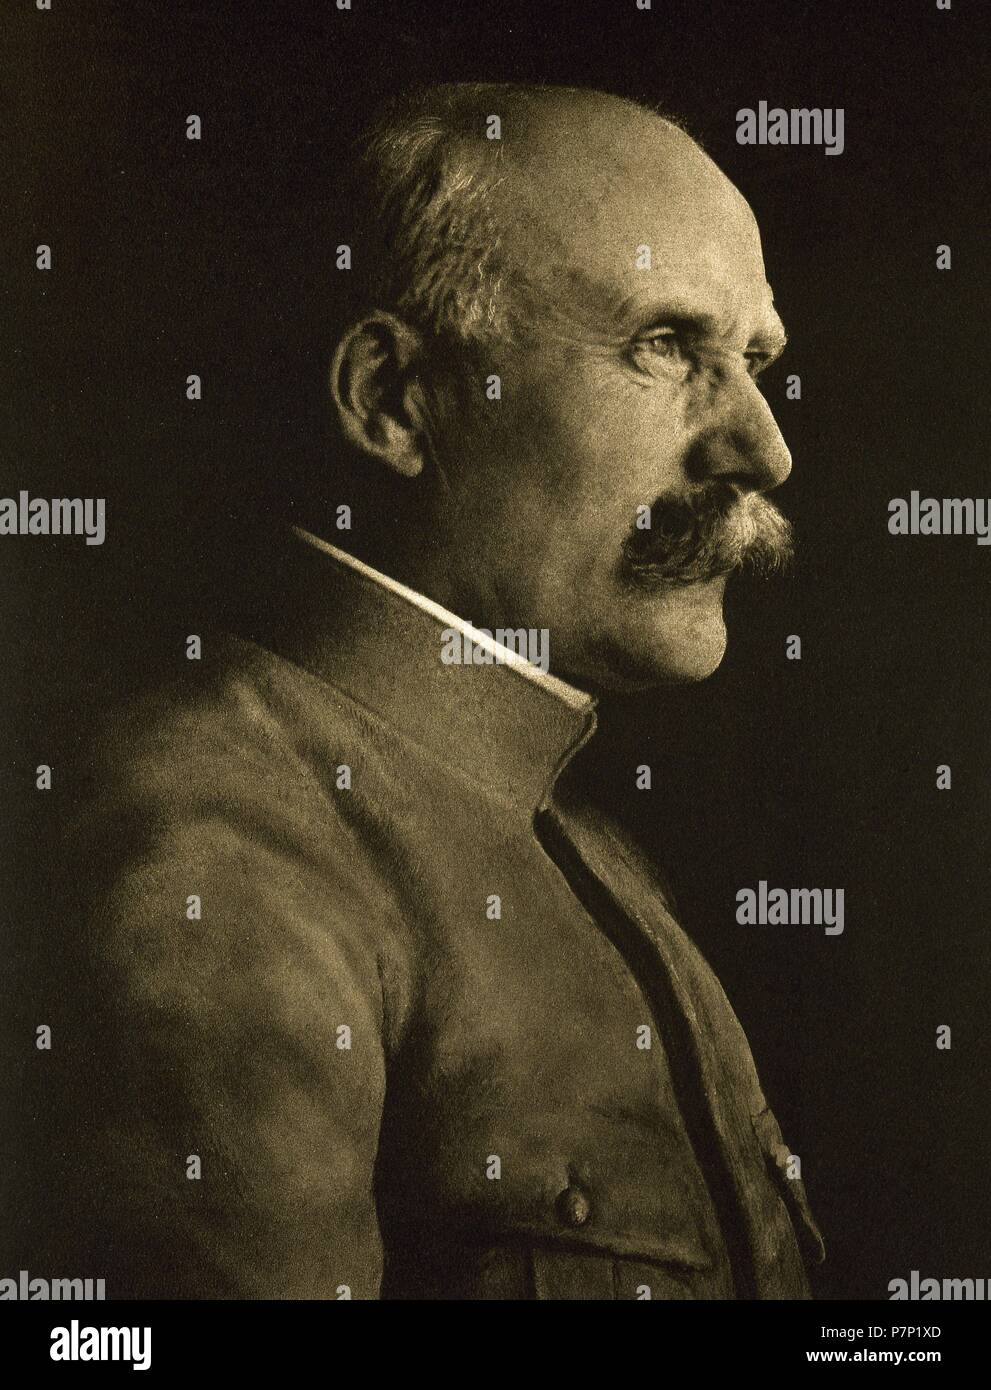 Philippe Pétain (1856-1951). Französischer General, der die Unterscheidung von Marschall von Frankreich zu erreichen. Staatschef von Vichy-Frankreich von 1940 bis 1944. Porträt. "La Ilustracion Francesa", 1917. Stockfoto